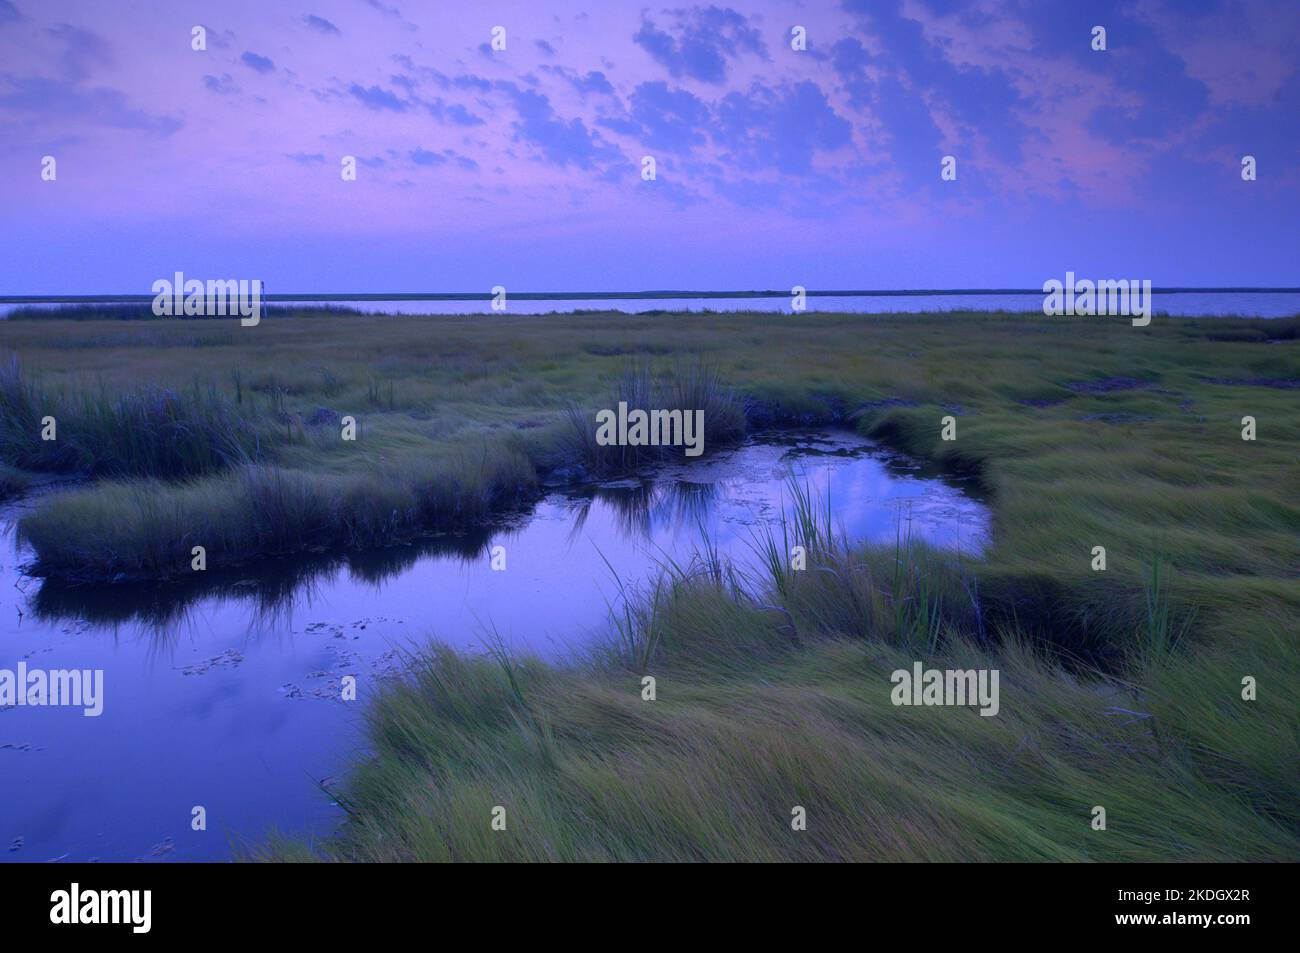 Alba nella baia di Chesapeake, il più grande estuario degli Stati Uniti Foto Stock